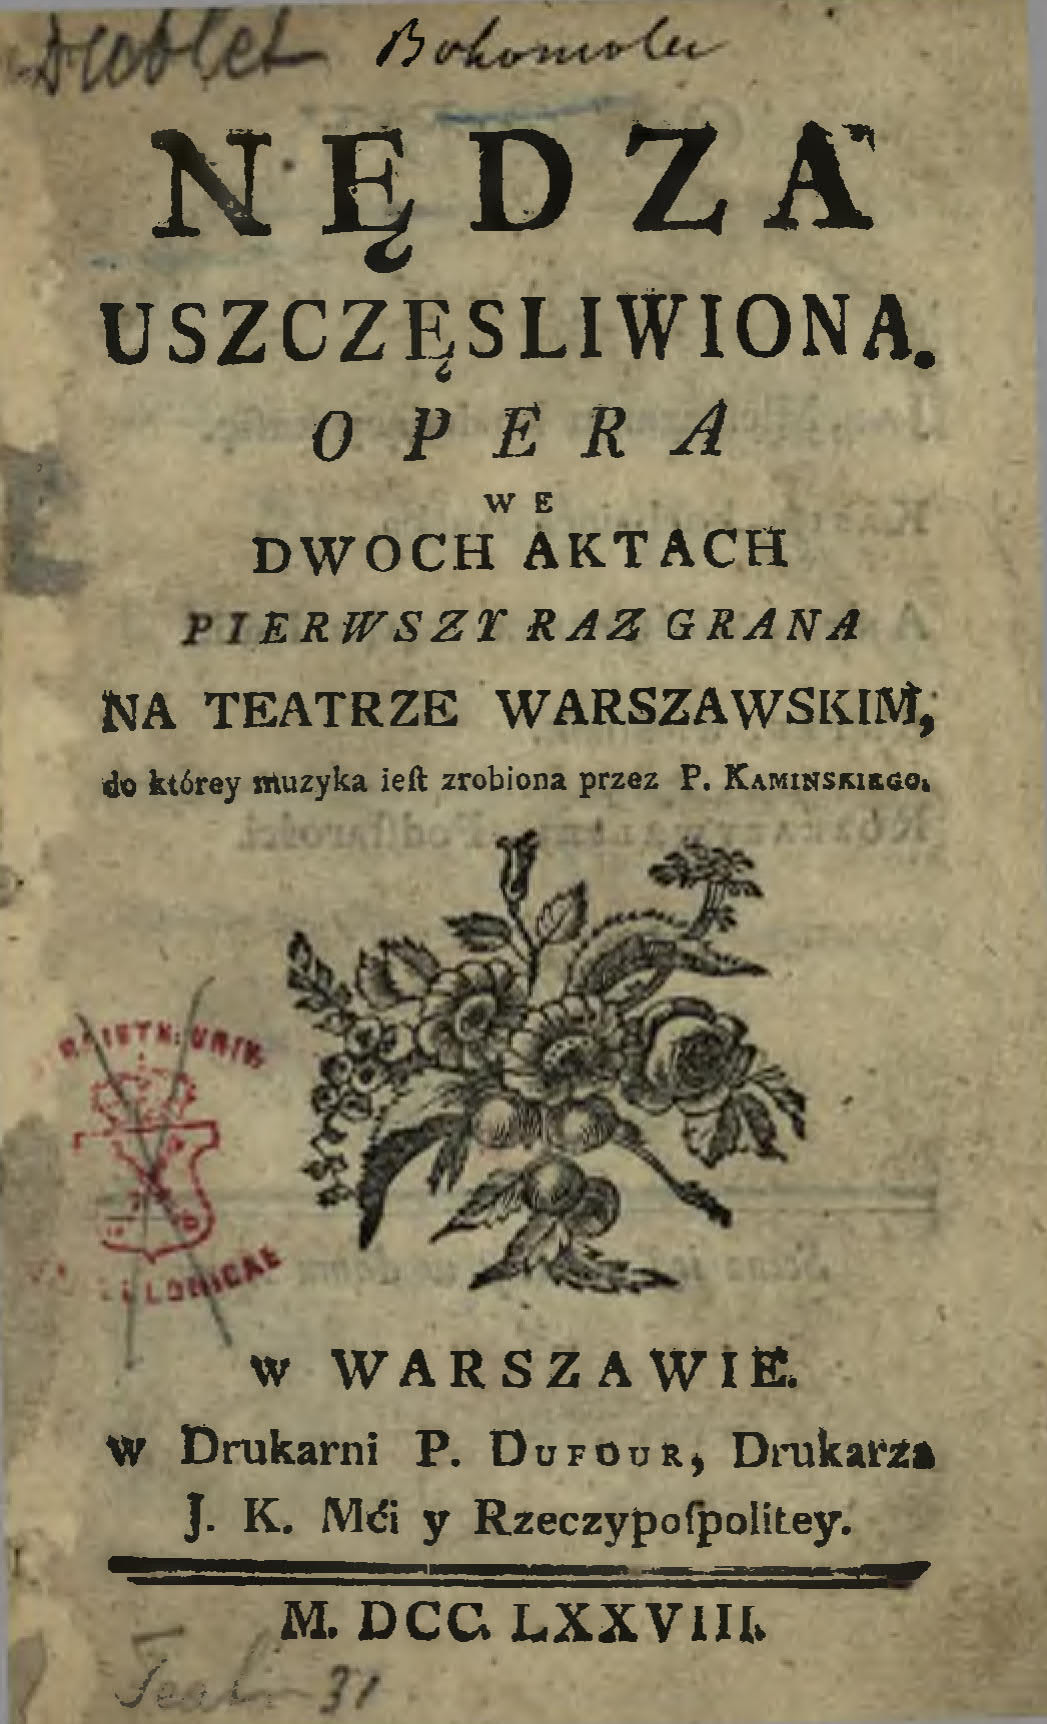 Nędza Uszczęsliwiona : Opera We Dwoch Aktach : Pierwszy Raz Grana Na Teatrze Warszawskim, do którey muzyka iest zrobiona przez P. Kaminskiego [!].